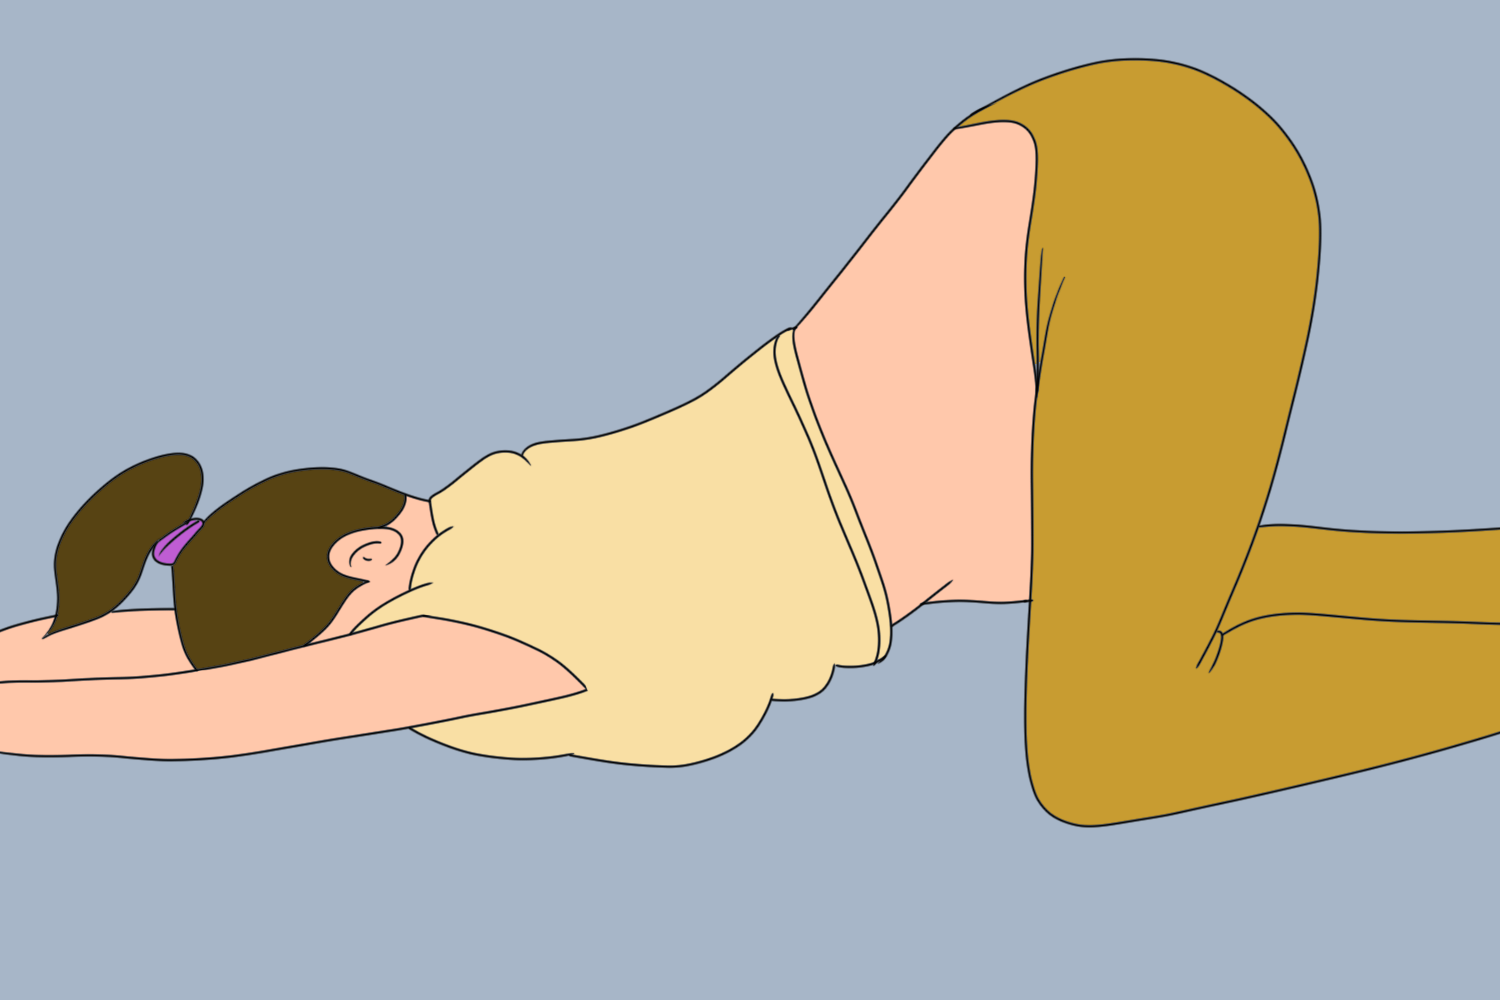 孕妇膝胸卧位置示意图